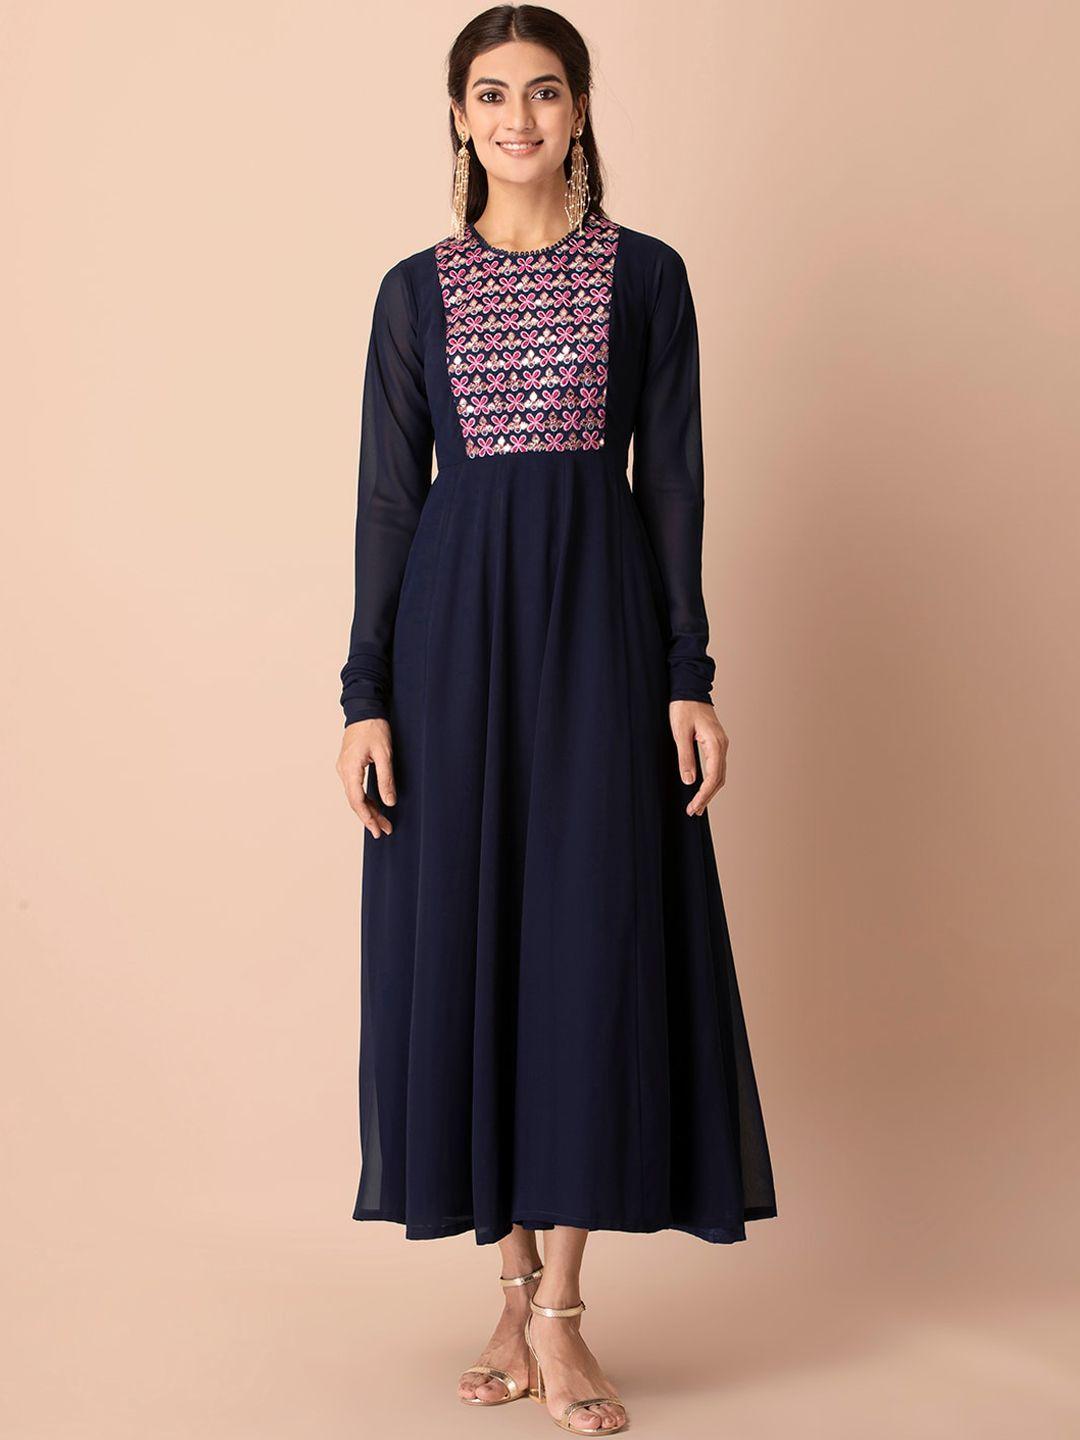 INDYA Navy Blue & Pink Floral Embroidered Churidar Sleeve Anarkali Dress